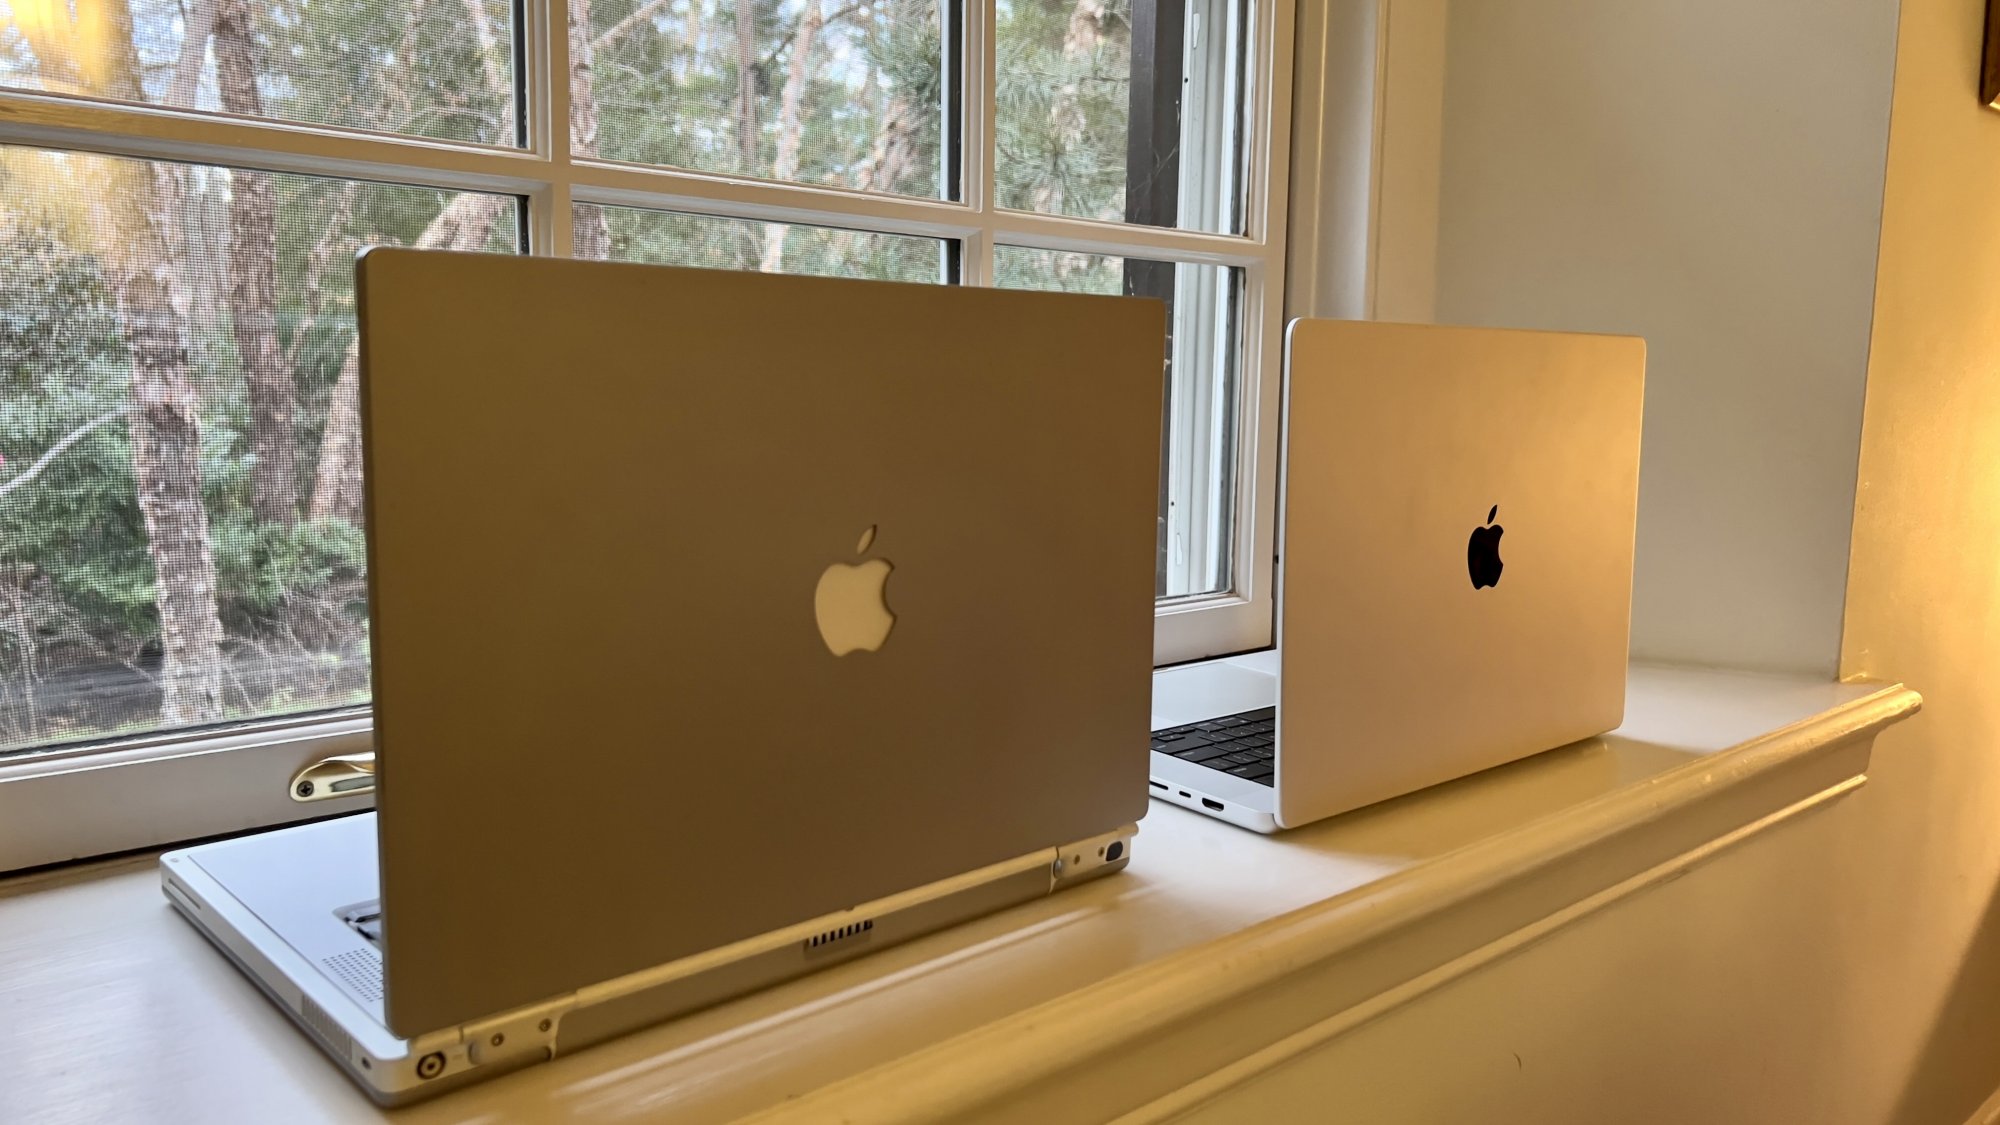 MacBook Pro 2021 comparé au PowerBook G4 Titanium 2001 – montre des similitudes frappantes